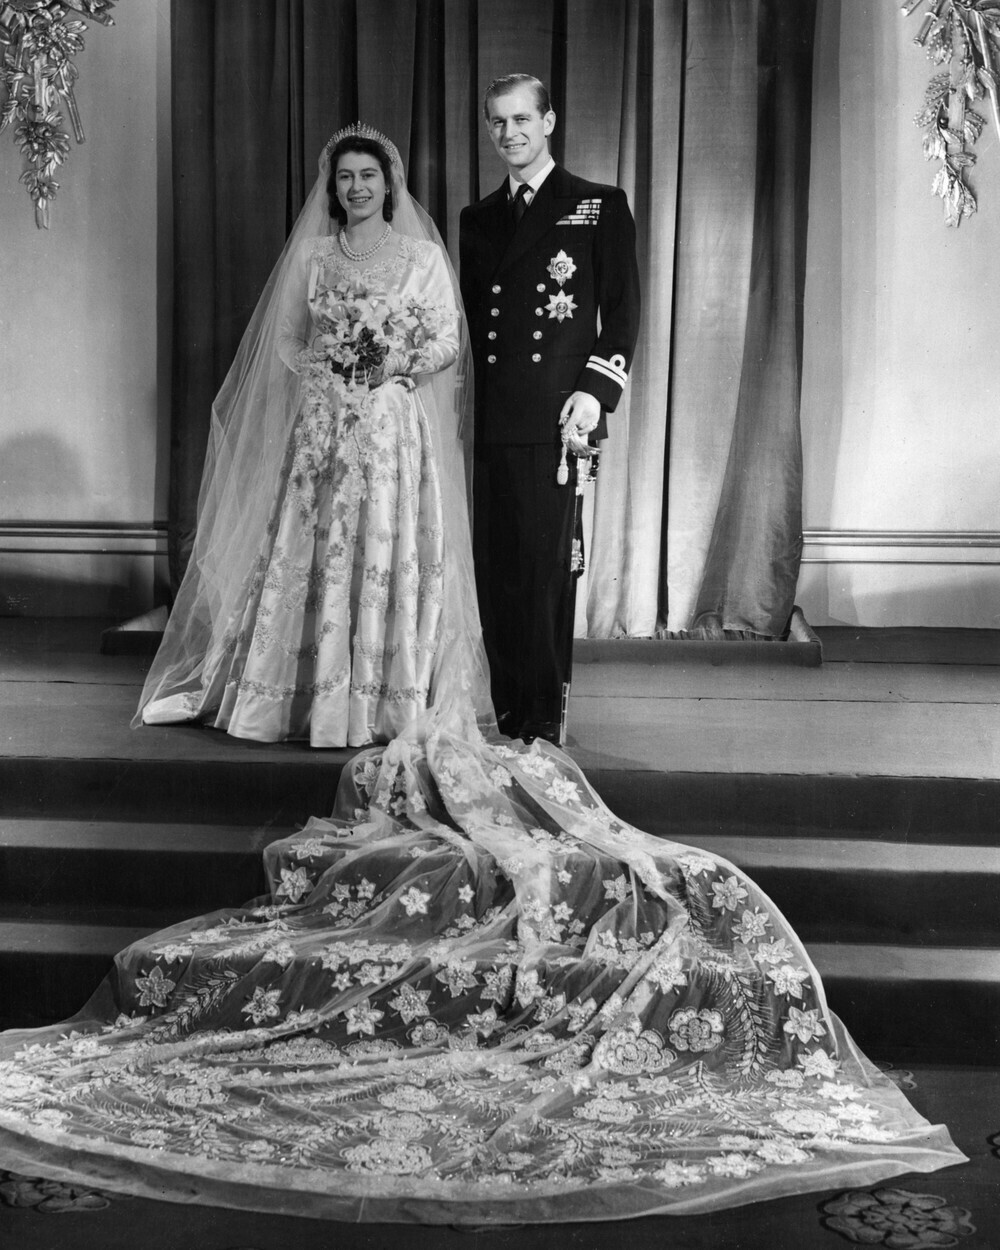 Regina Elisabeta şi prinţul Philip sărbătoresc 73 de ani de căsnicie. Imagini de la nuntă. GALERIE FOTO - Imaginea 7